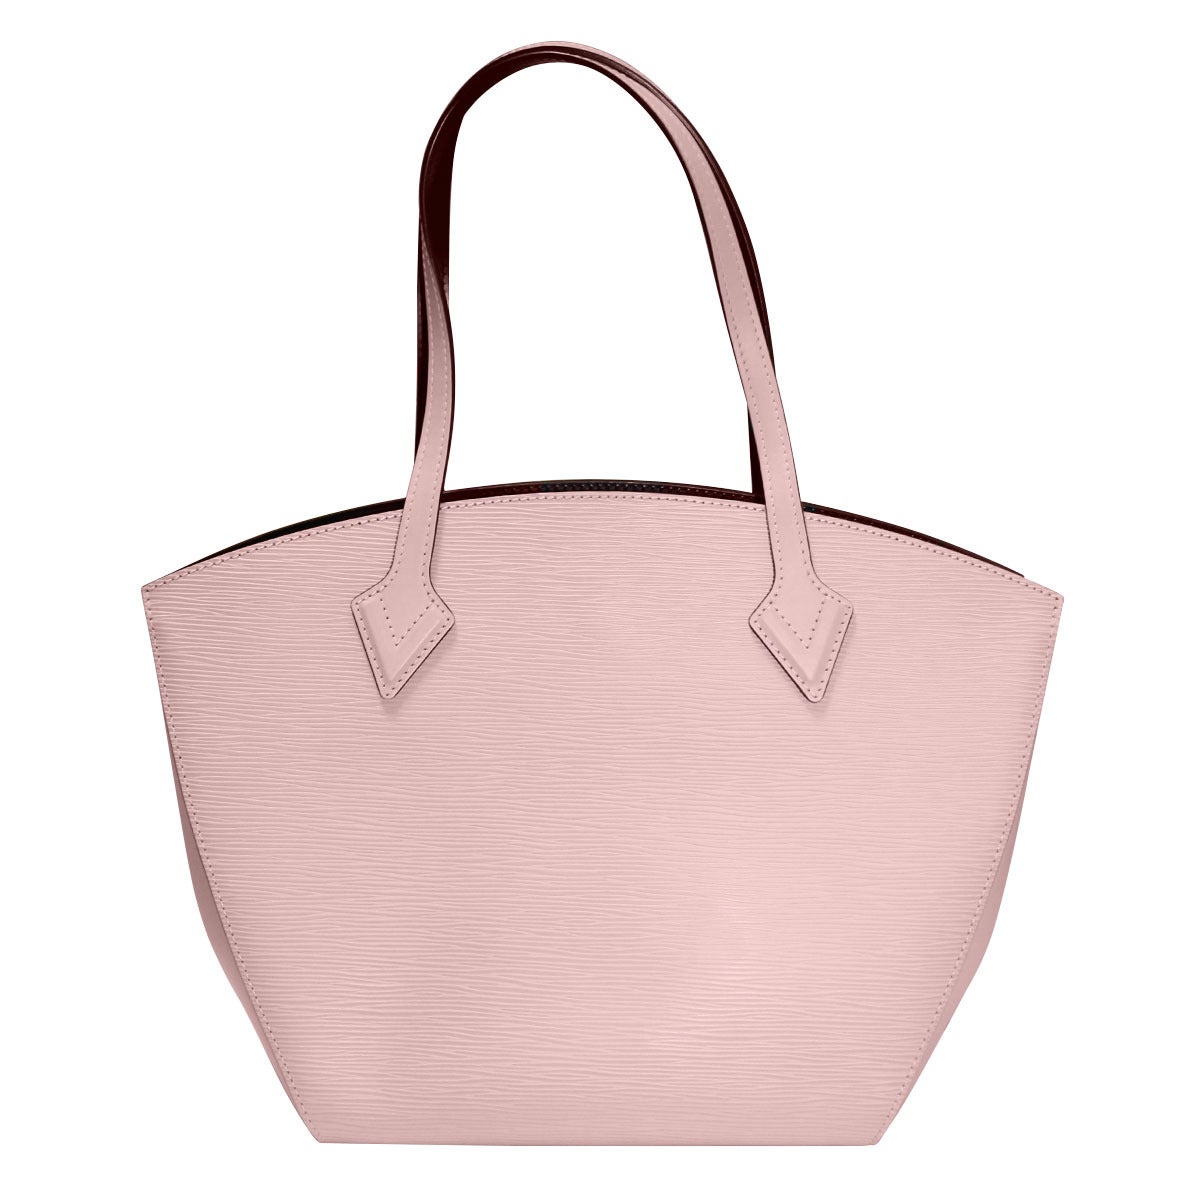 Brand: Louis Vuitton
Style: Shoulder Bag
Handles: Pink Magnolia Cowhide Leather Shoulder Straps
Measurements: 15.25